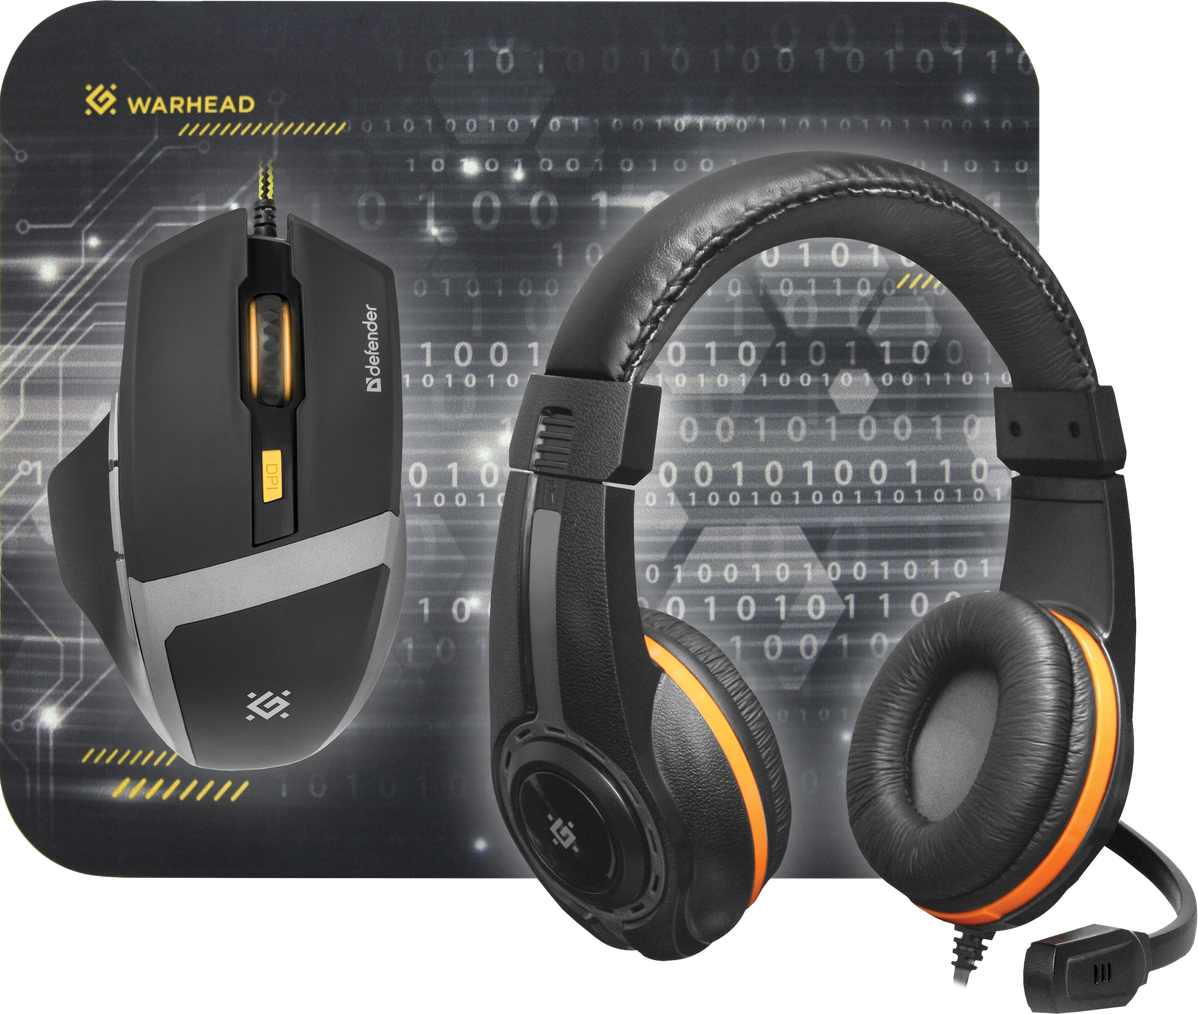 Комплект игровой Defender Warhead MPН-1600 черный мышь +гарнитура+ковер